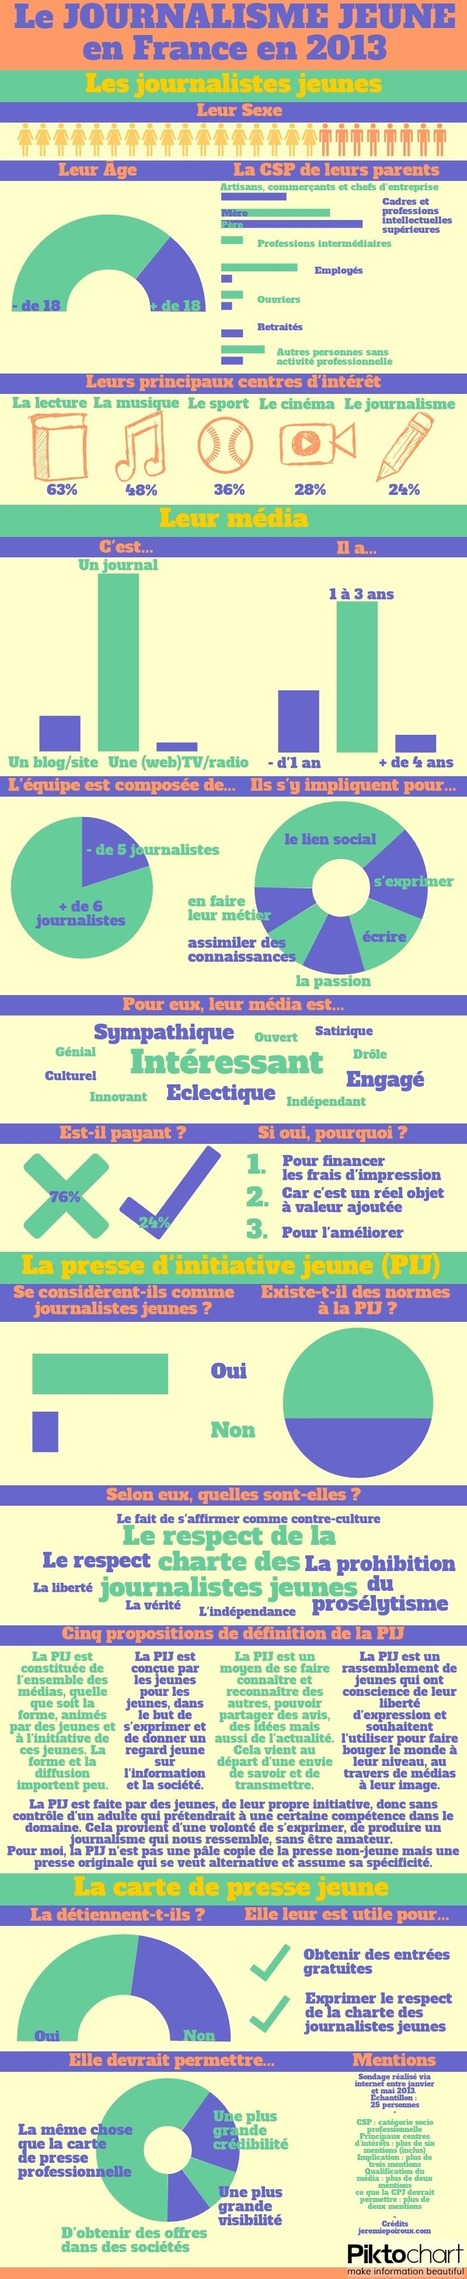 [Infographie] Le journalisme jeune en France en 2013 | EcritureS - WritingZ | Scoop.it